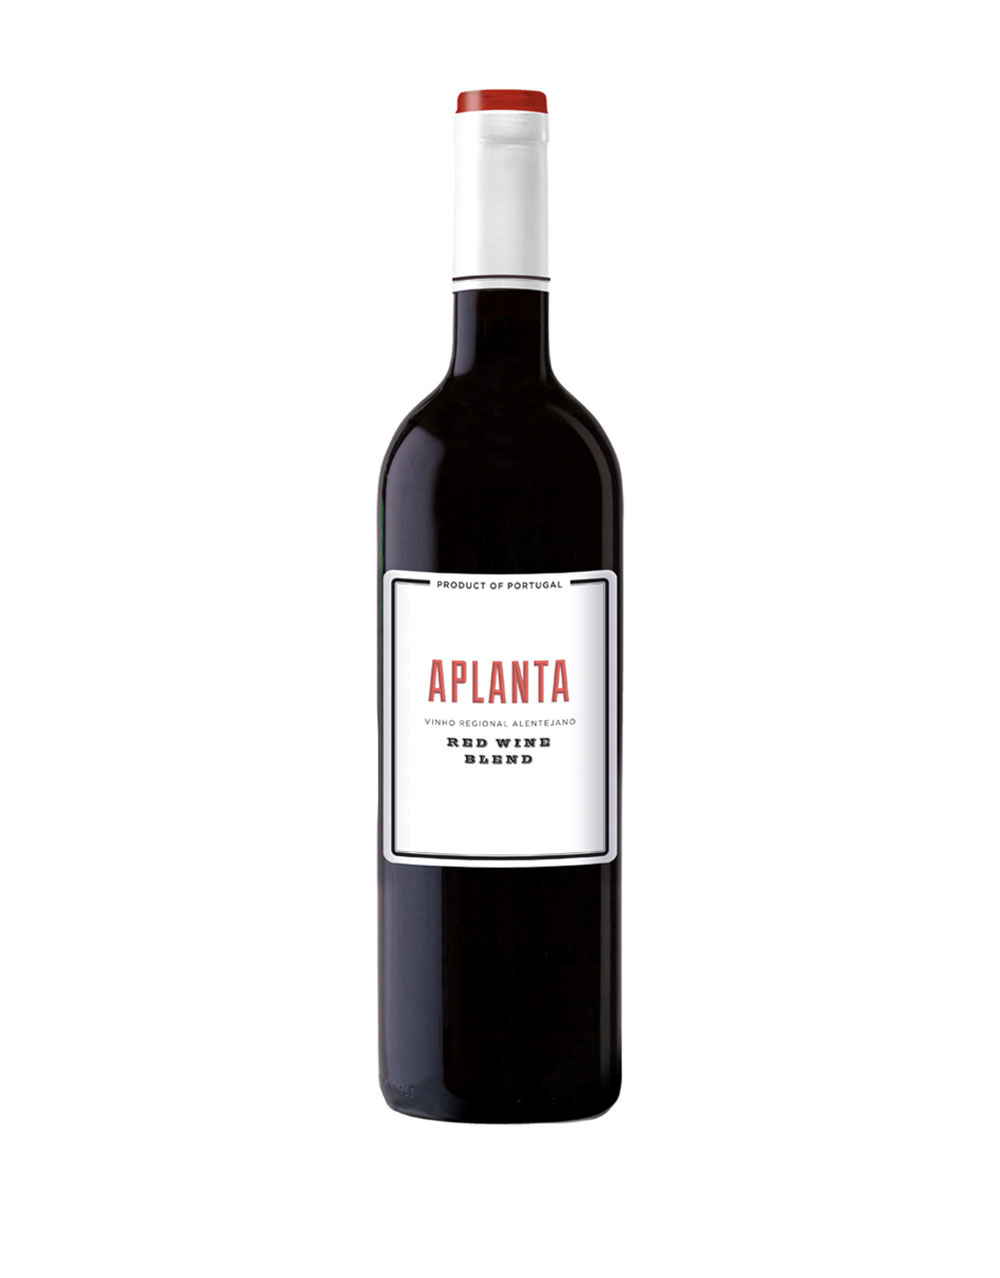 Aplanta 2014 Alentejano Portugal Red wine